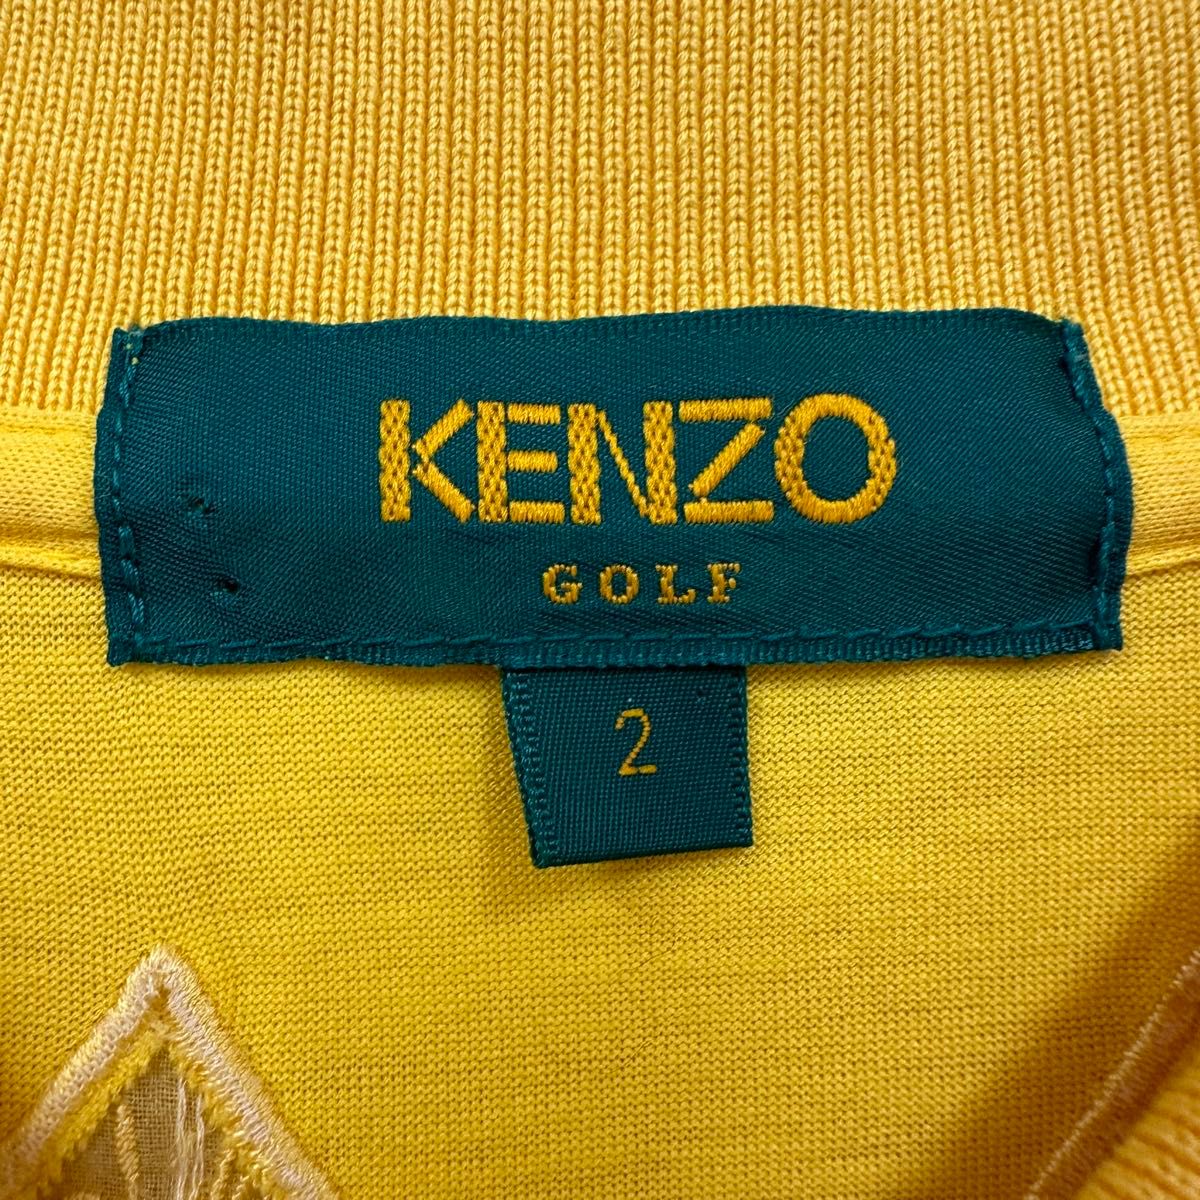 KENZOポロシャツ KENZO GOLF レトロポロシャツ レース 刺繍 ポロシャツ ゴルフウェア 長袖ポロシャツ ケンゾー